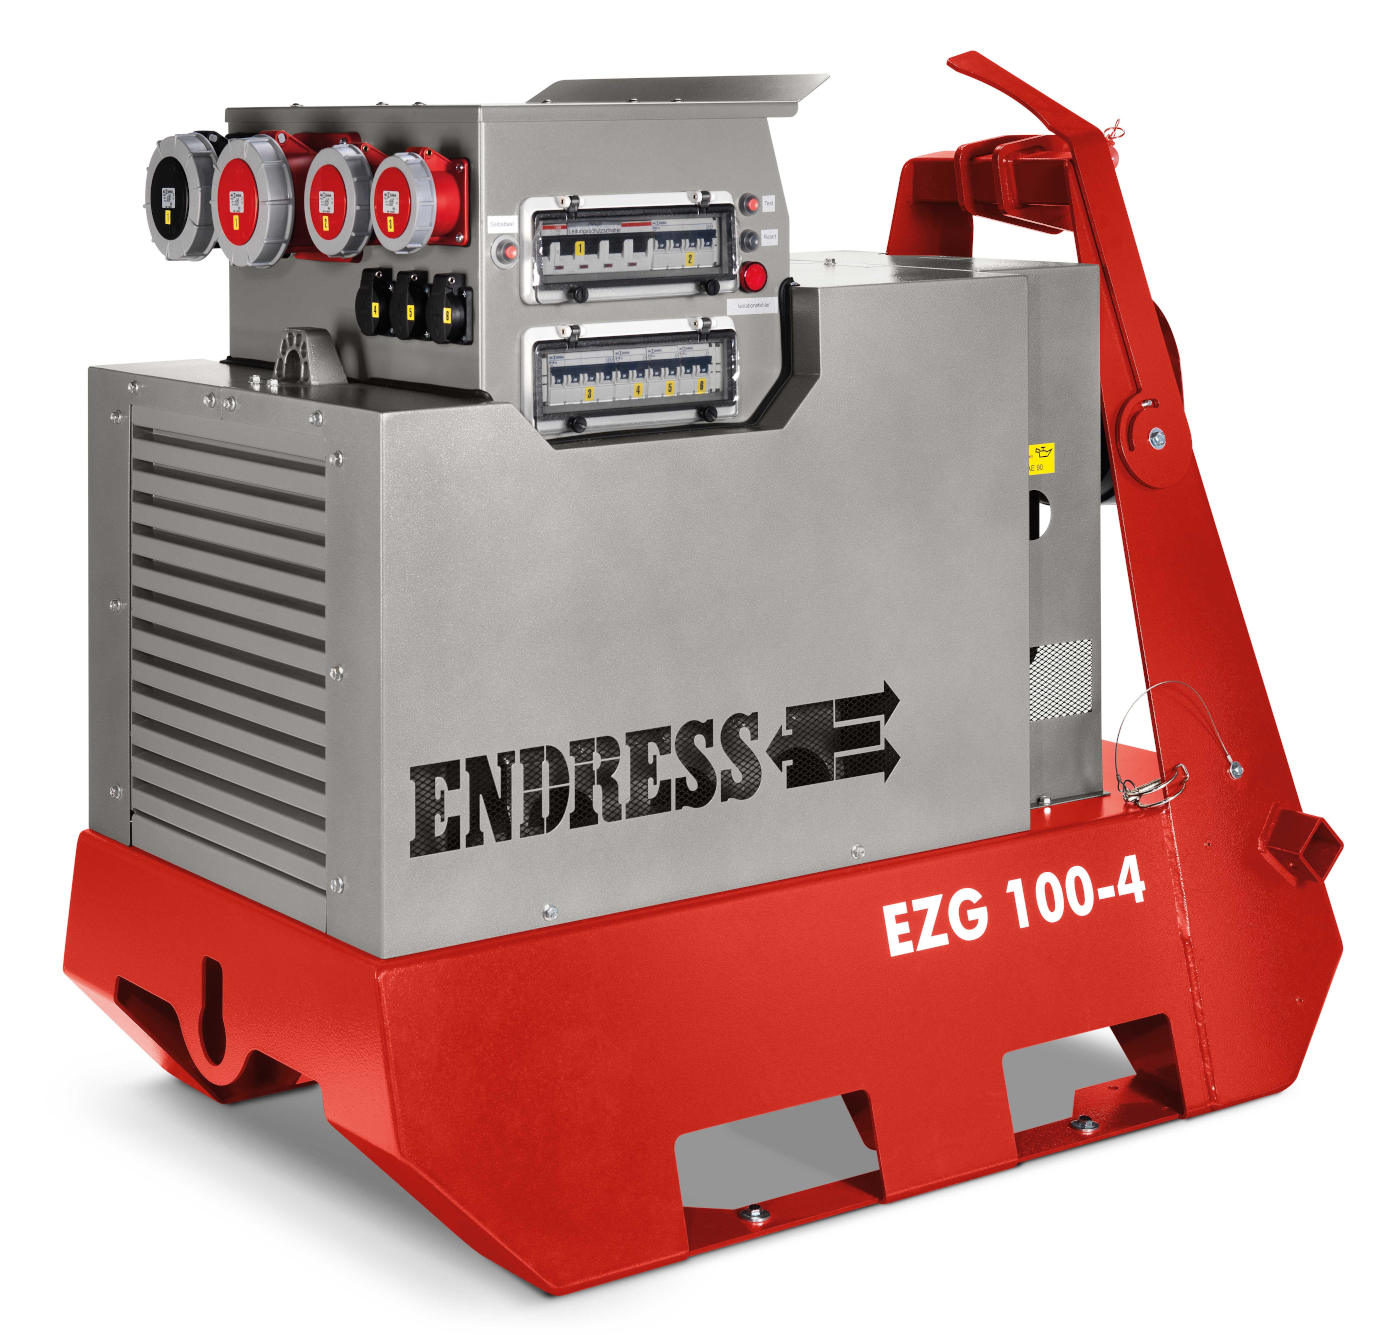 Zapfwellengenerator EZG 100/4 II/TN-S Endress für Feld- und Einspeisebetrieb